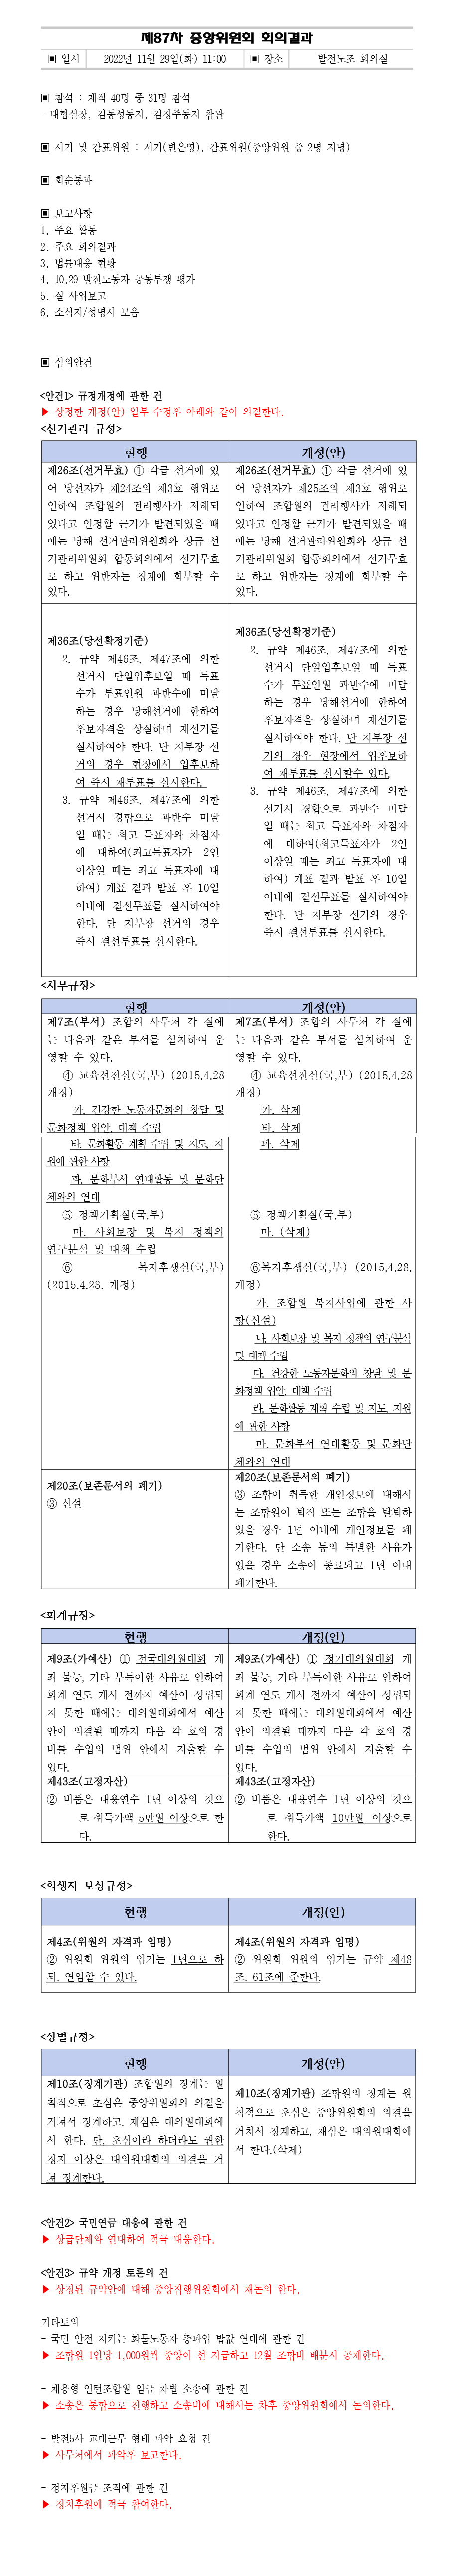 제87차-중앙위원회-회의결과.jpg